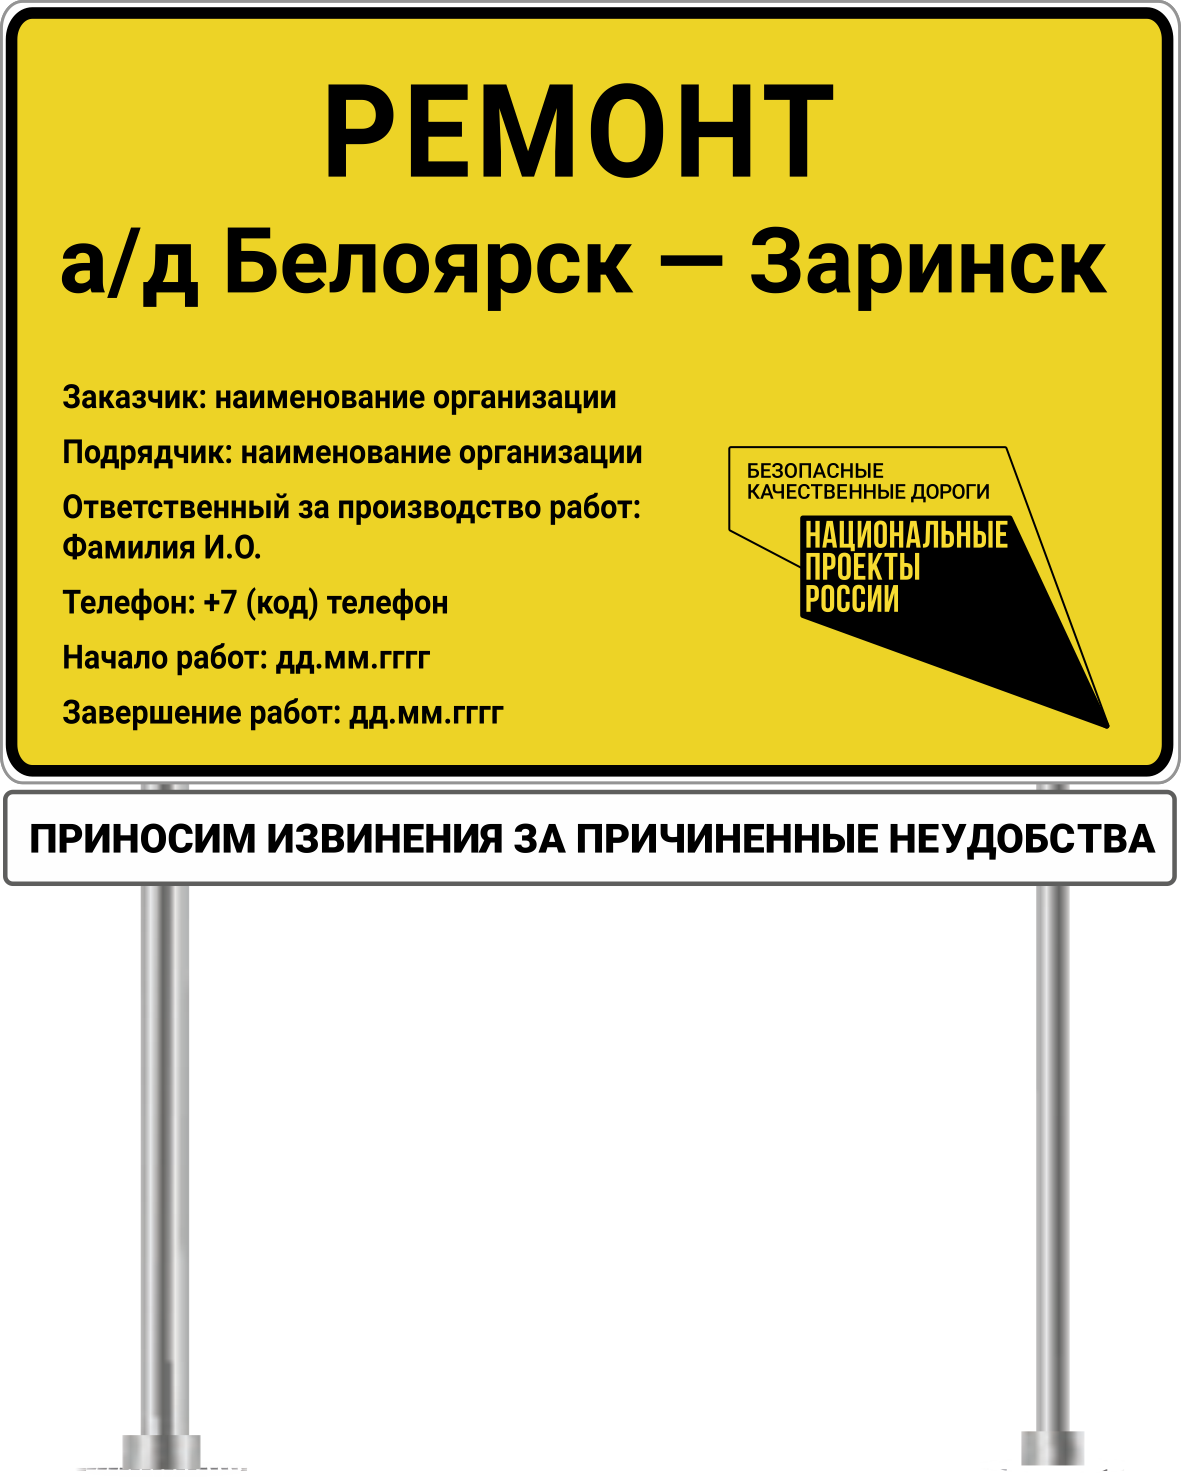 Информационный щит на объектах национального проекта “Безопасные и качественные автомобильные дороги” региональные объекты